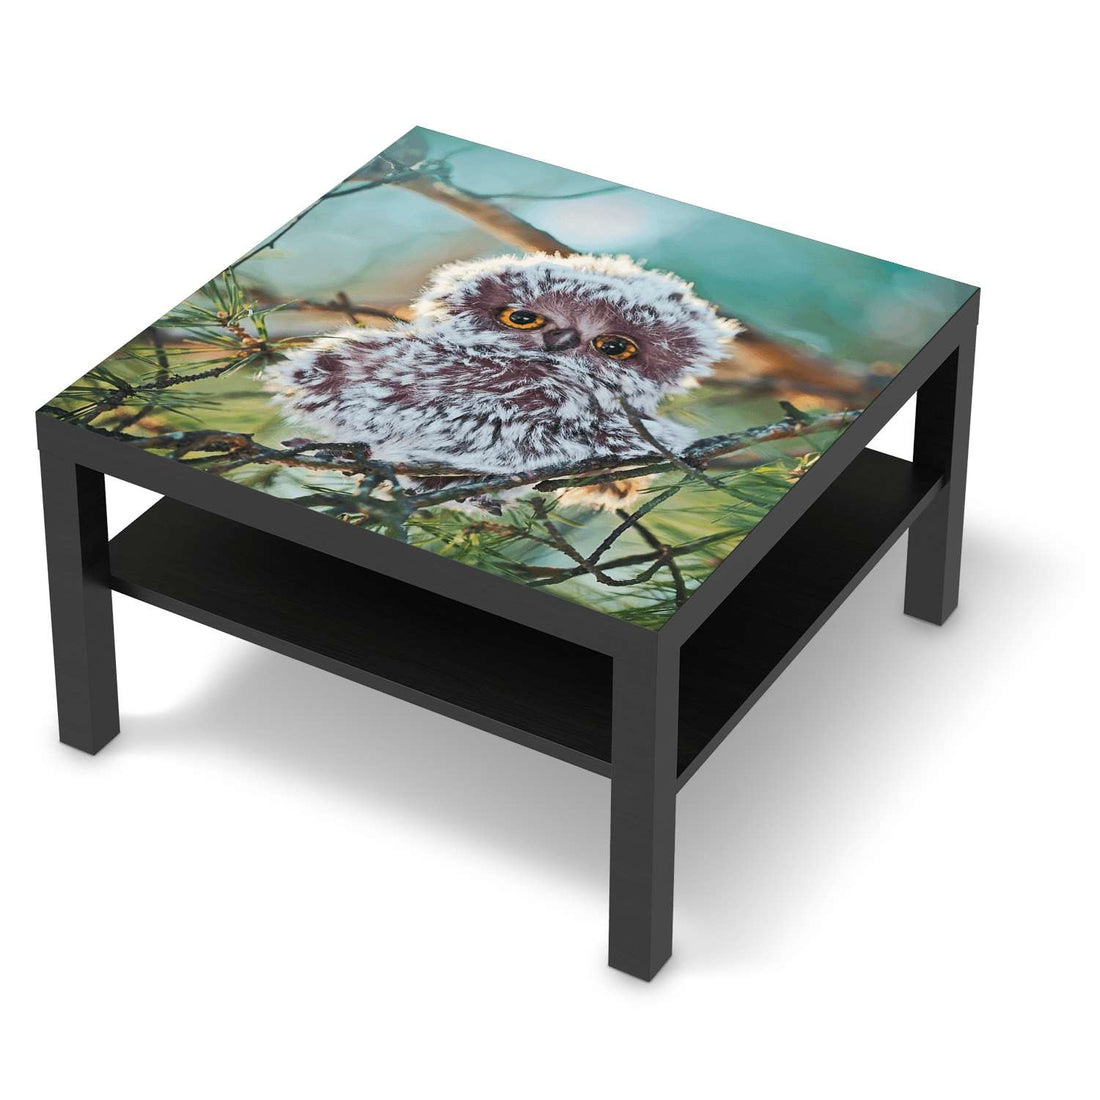 Selbstklebende Folie Wuschel - IKEA Lack Tisch 78x78 cm - schwarz